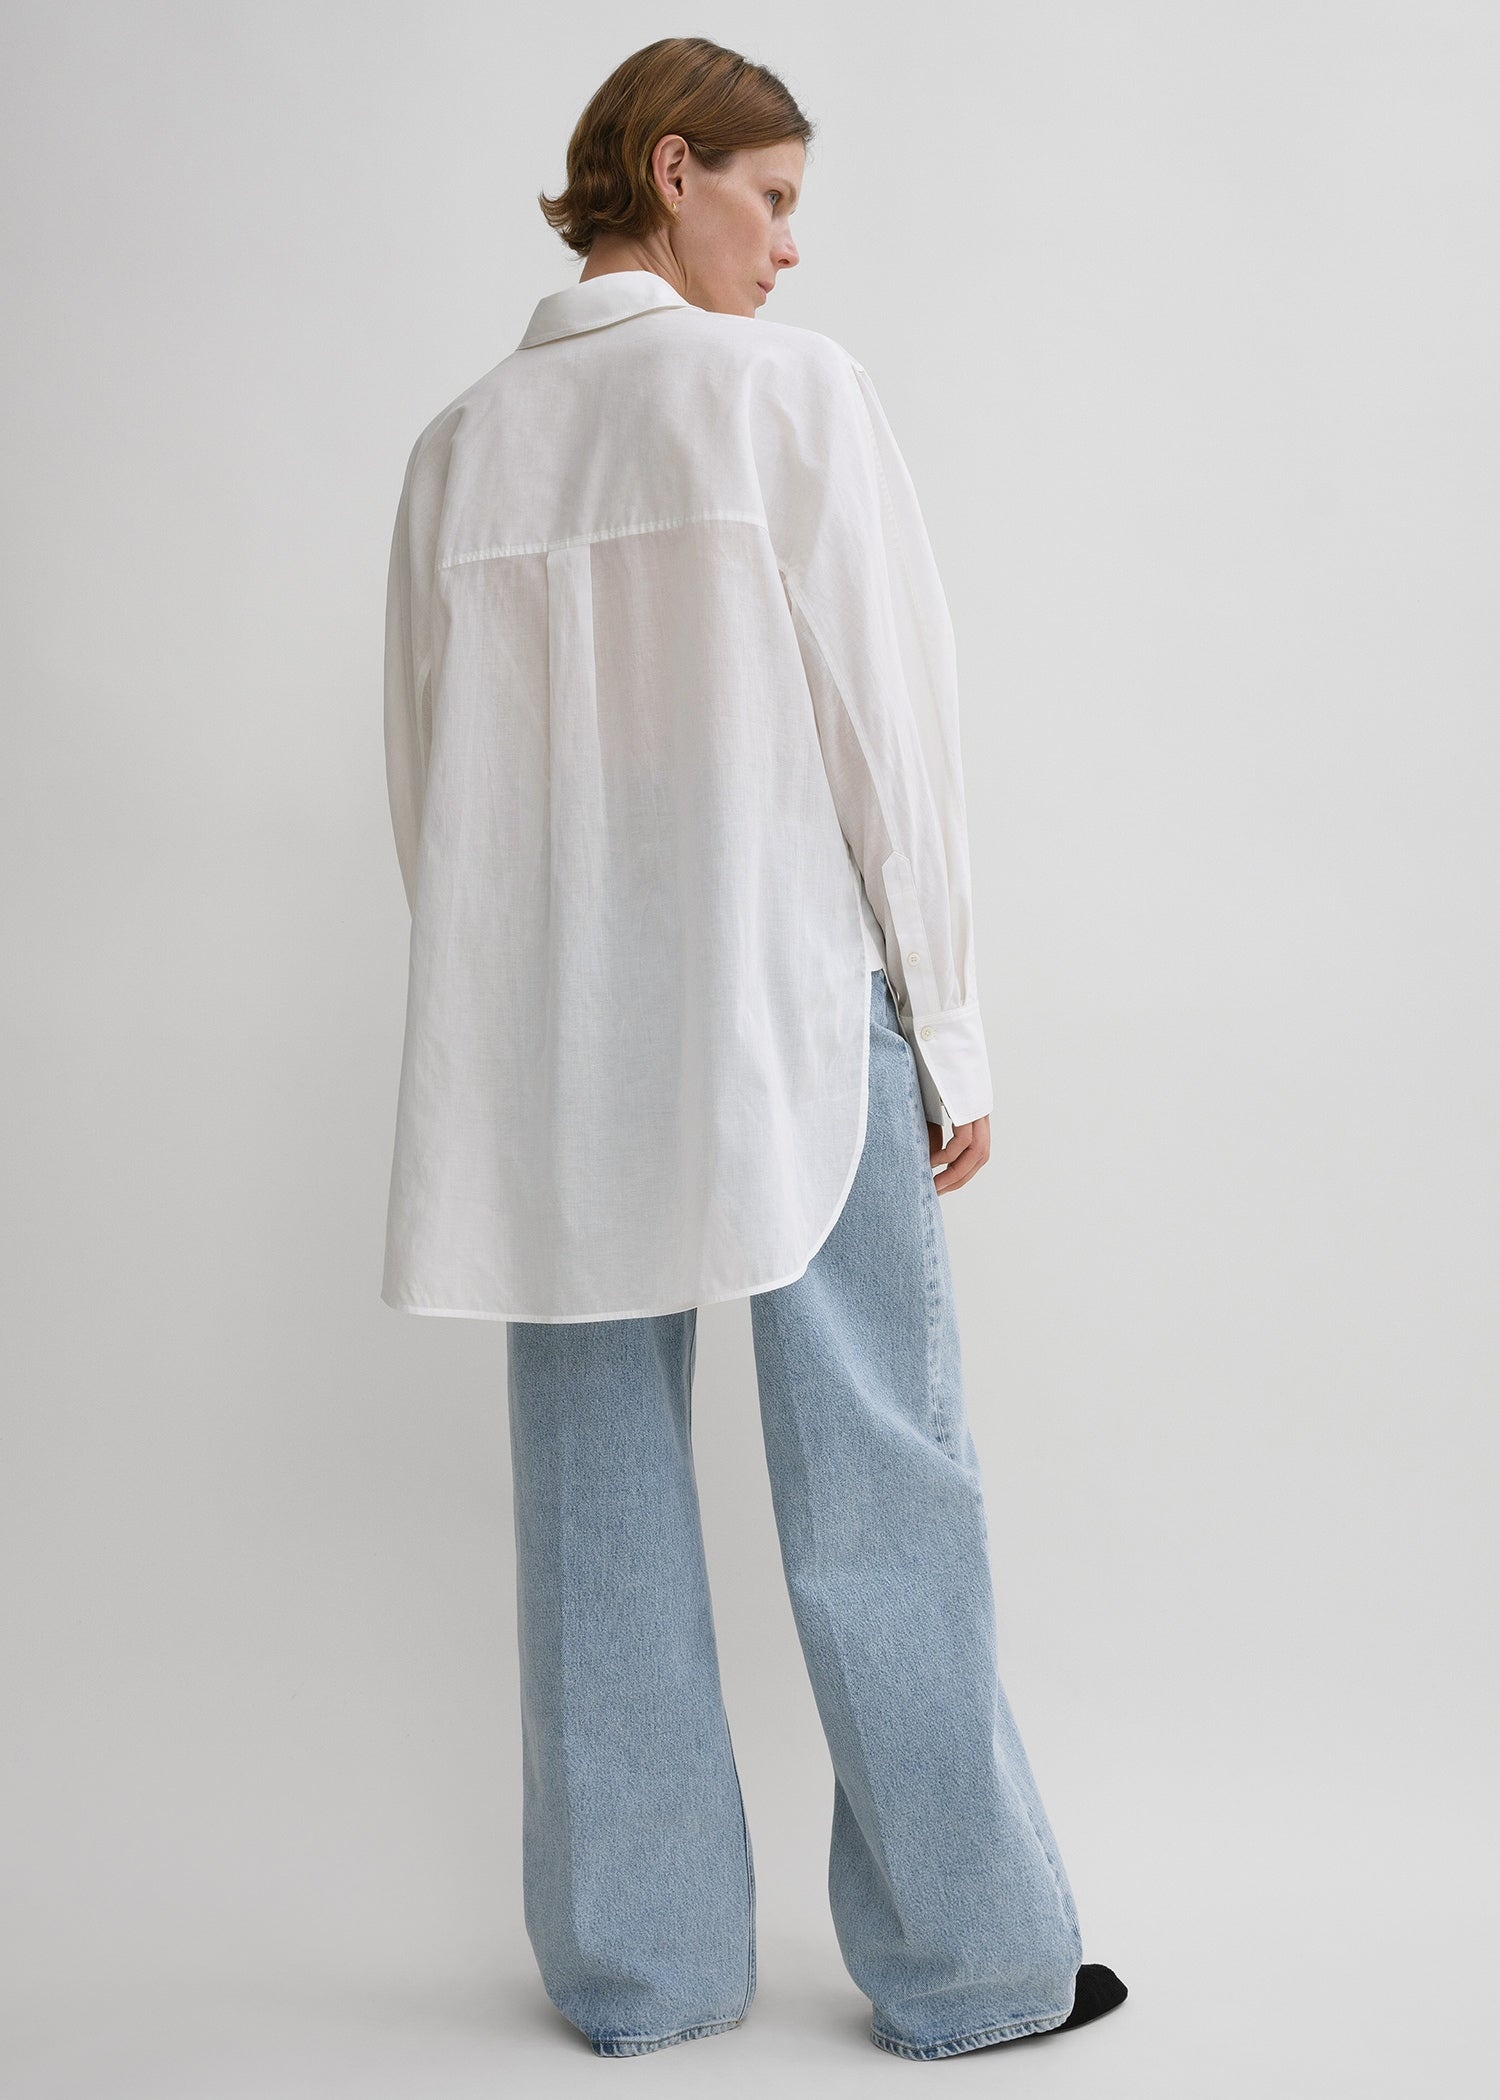 Kimono-sleeve cotton shirt white - 4